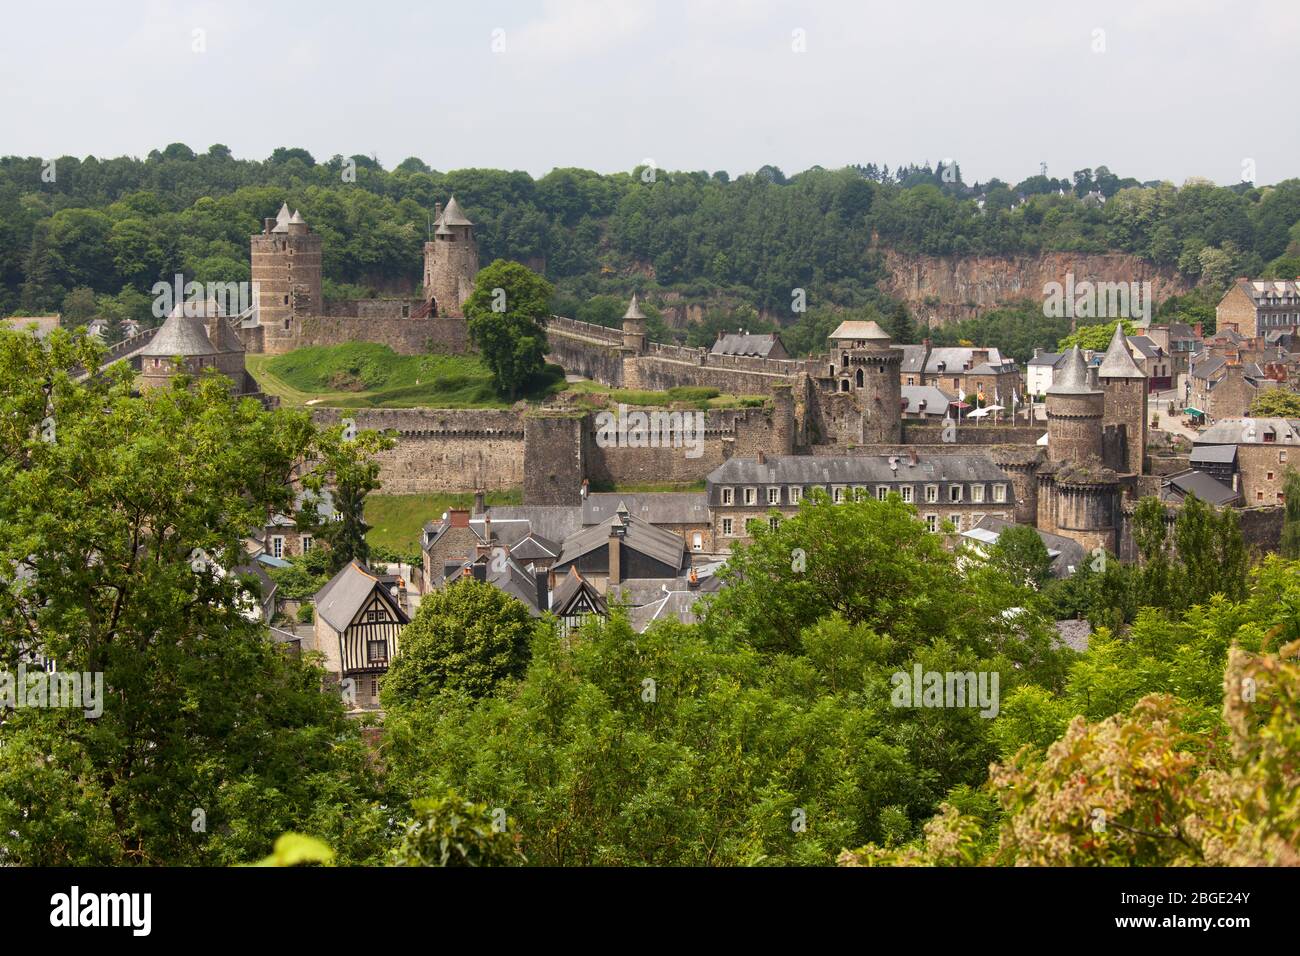 Stadt Fougeres, Frankreich. Malerische Luftaufnahme der mittelalterlichen Festung von Fougeres, dem Chateau de Fougeres. Stockfoto